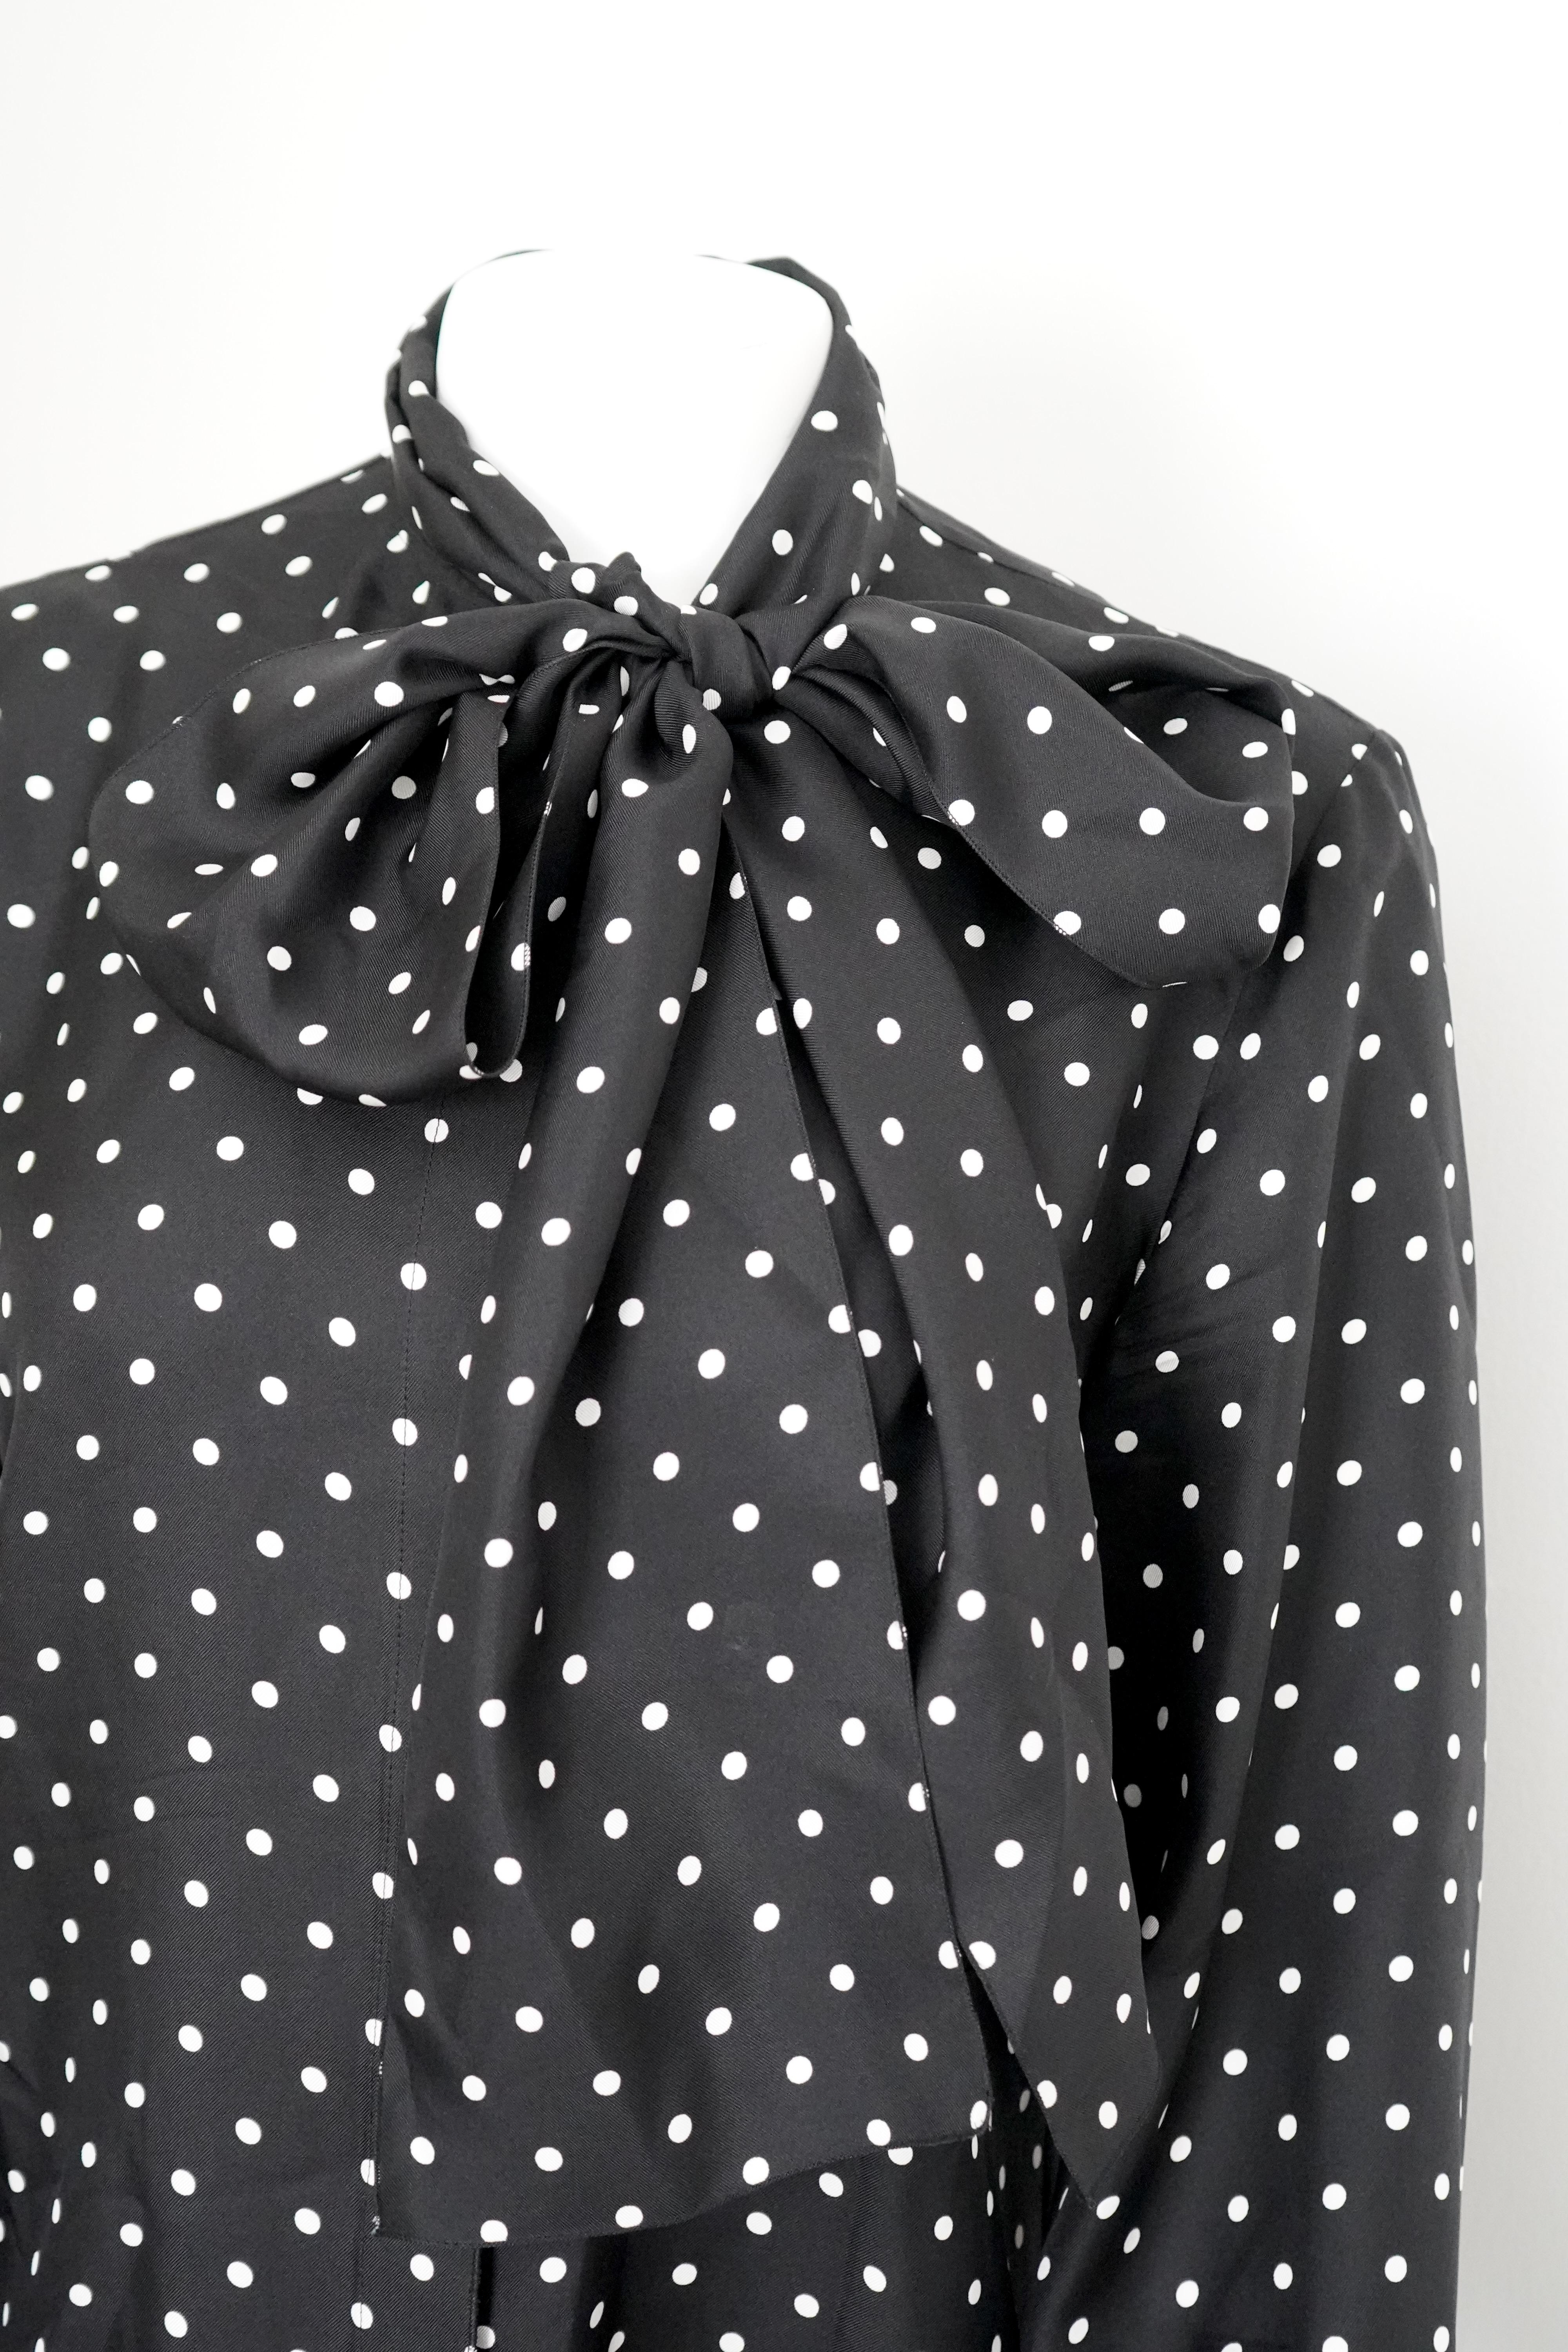 LOEWE Silk Polka-dot Long Sleeve Top  For Sale 1